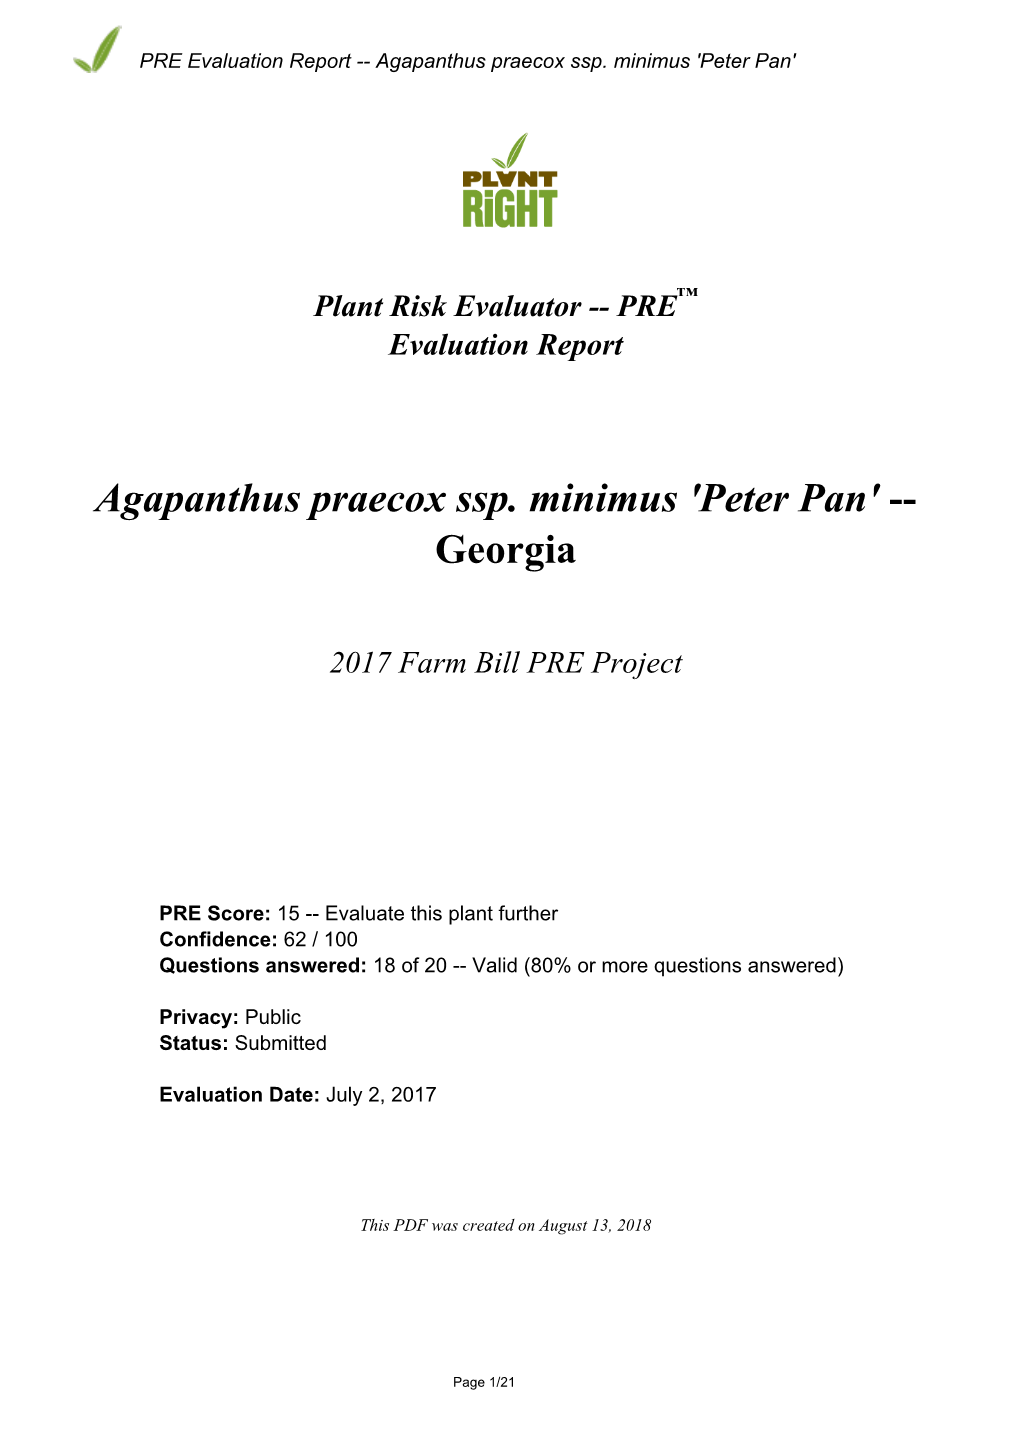 PRE Evaluation Report for Agapanthus Praecox Ssp. Minimus